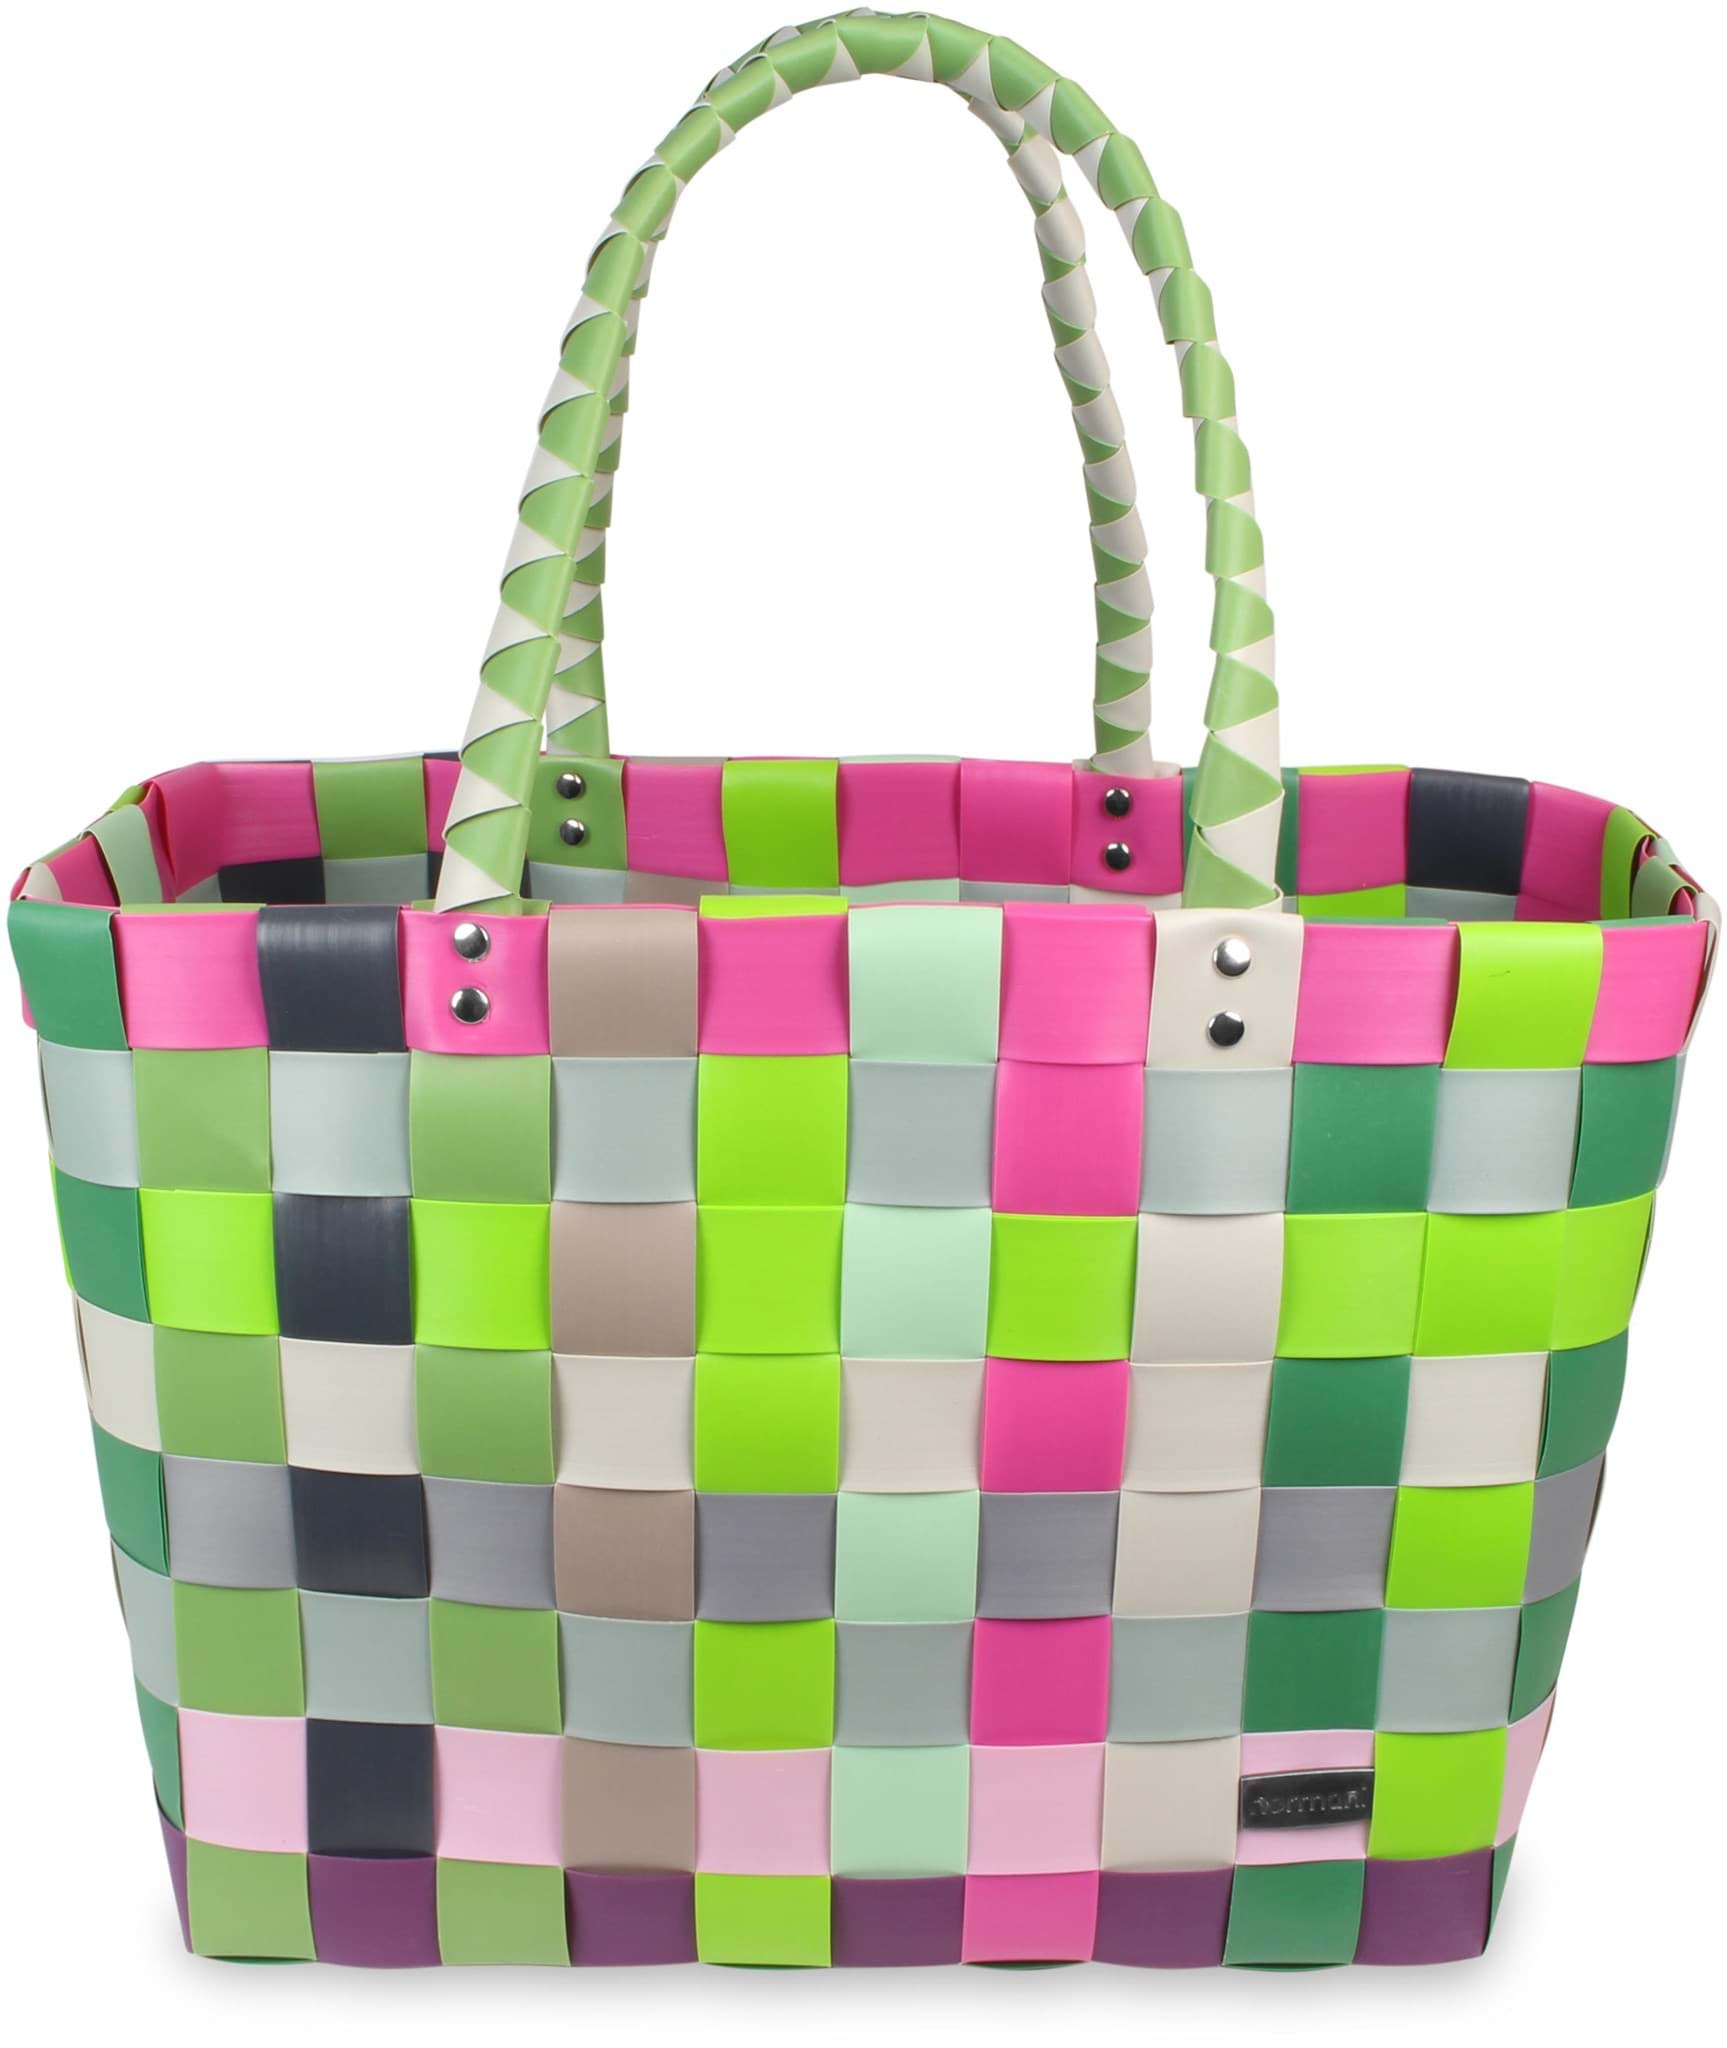 Bild von Einkaufskorb Einkaufstasche aus Kunststoff Blossom